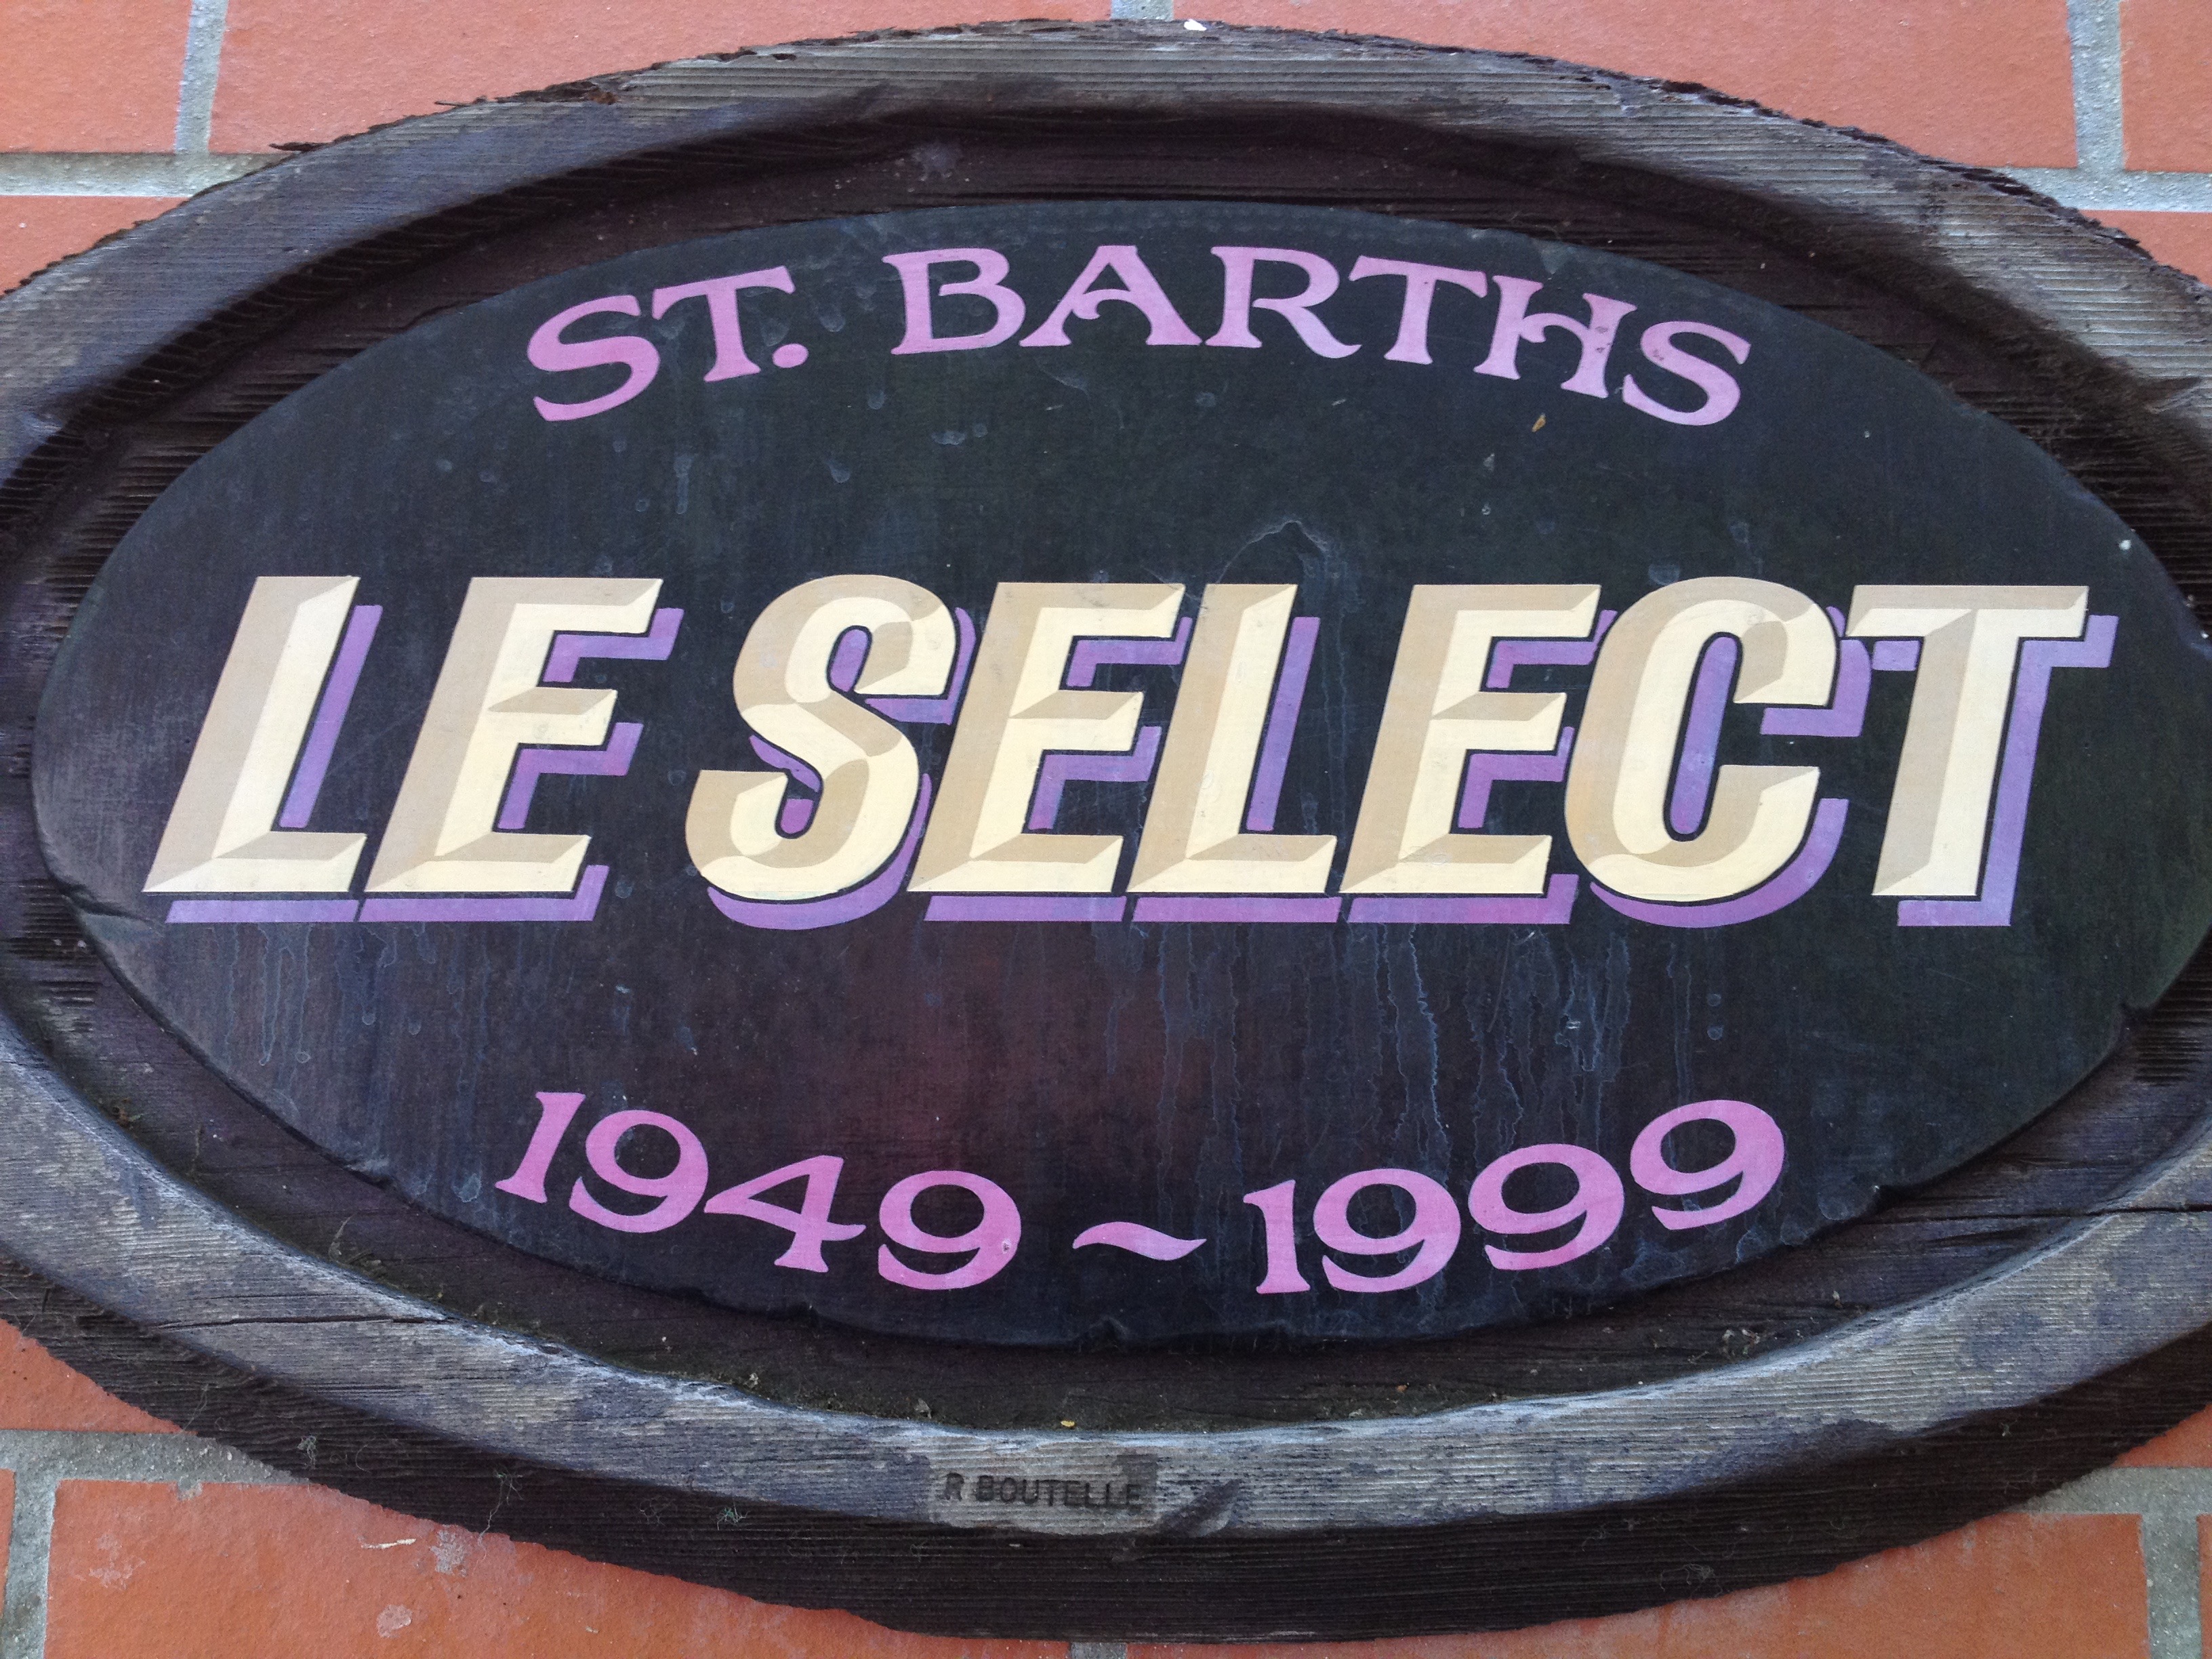 LeSelect restaurant sign, St.Bart's in the Caribbean photo©CarolKent